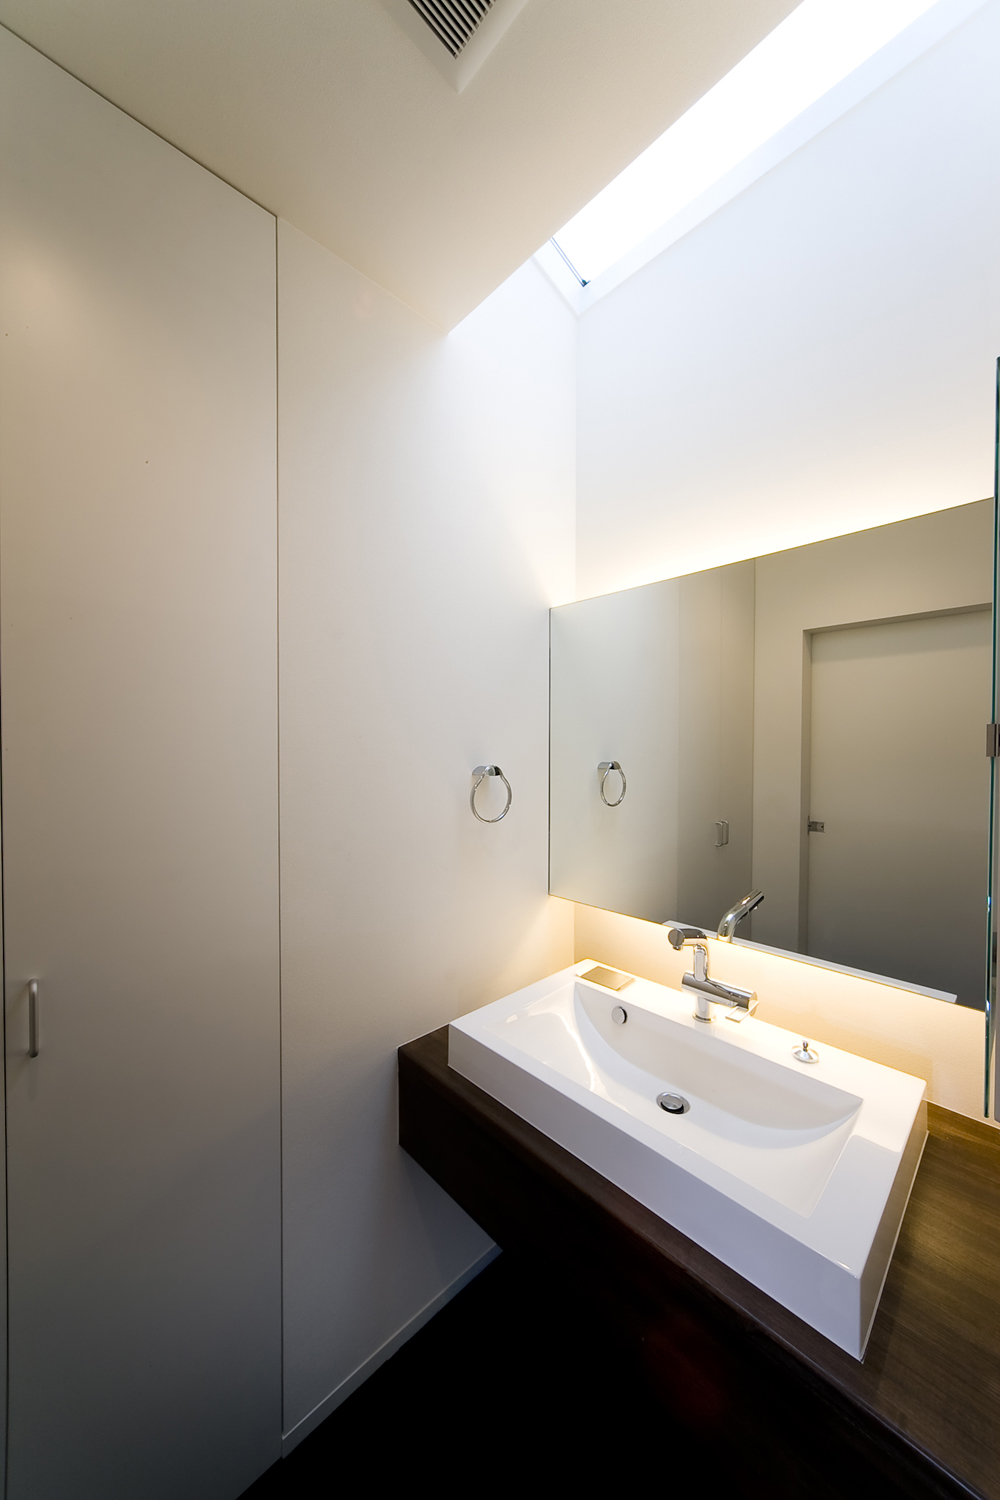 天井からの光、アッパー＆ダウン照明がふんわりとした空気を生むシンプルな洗面所